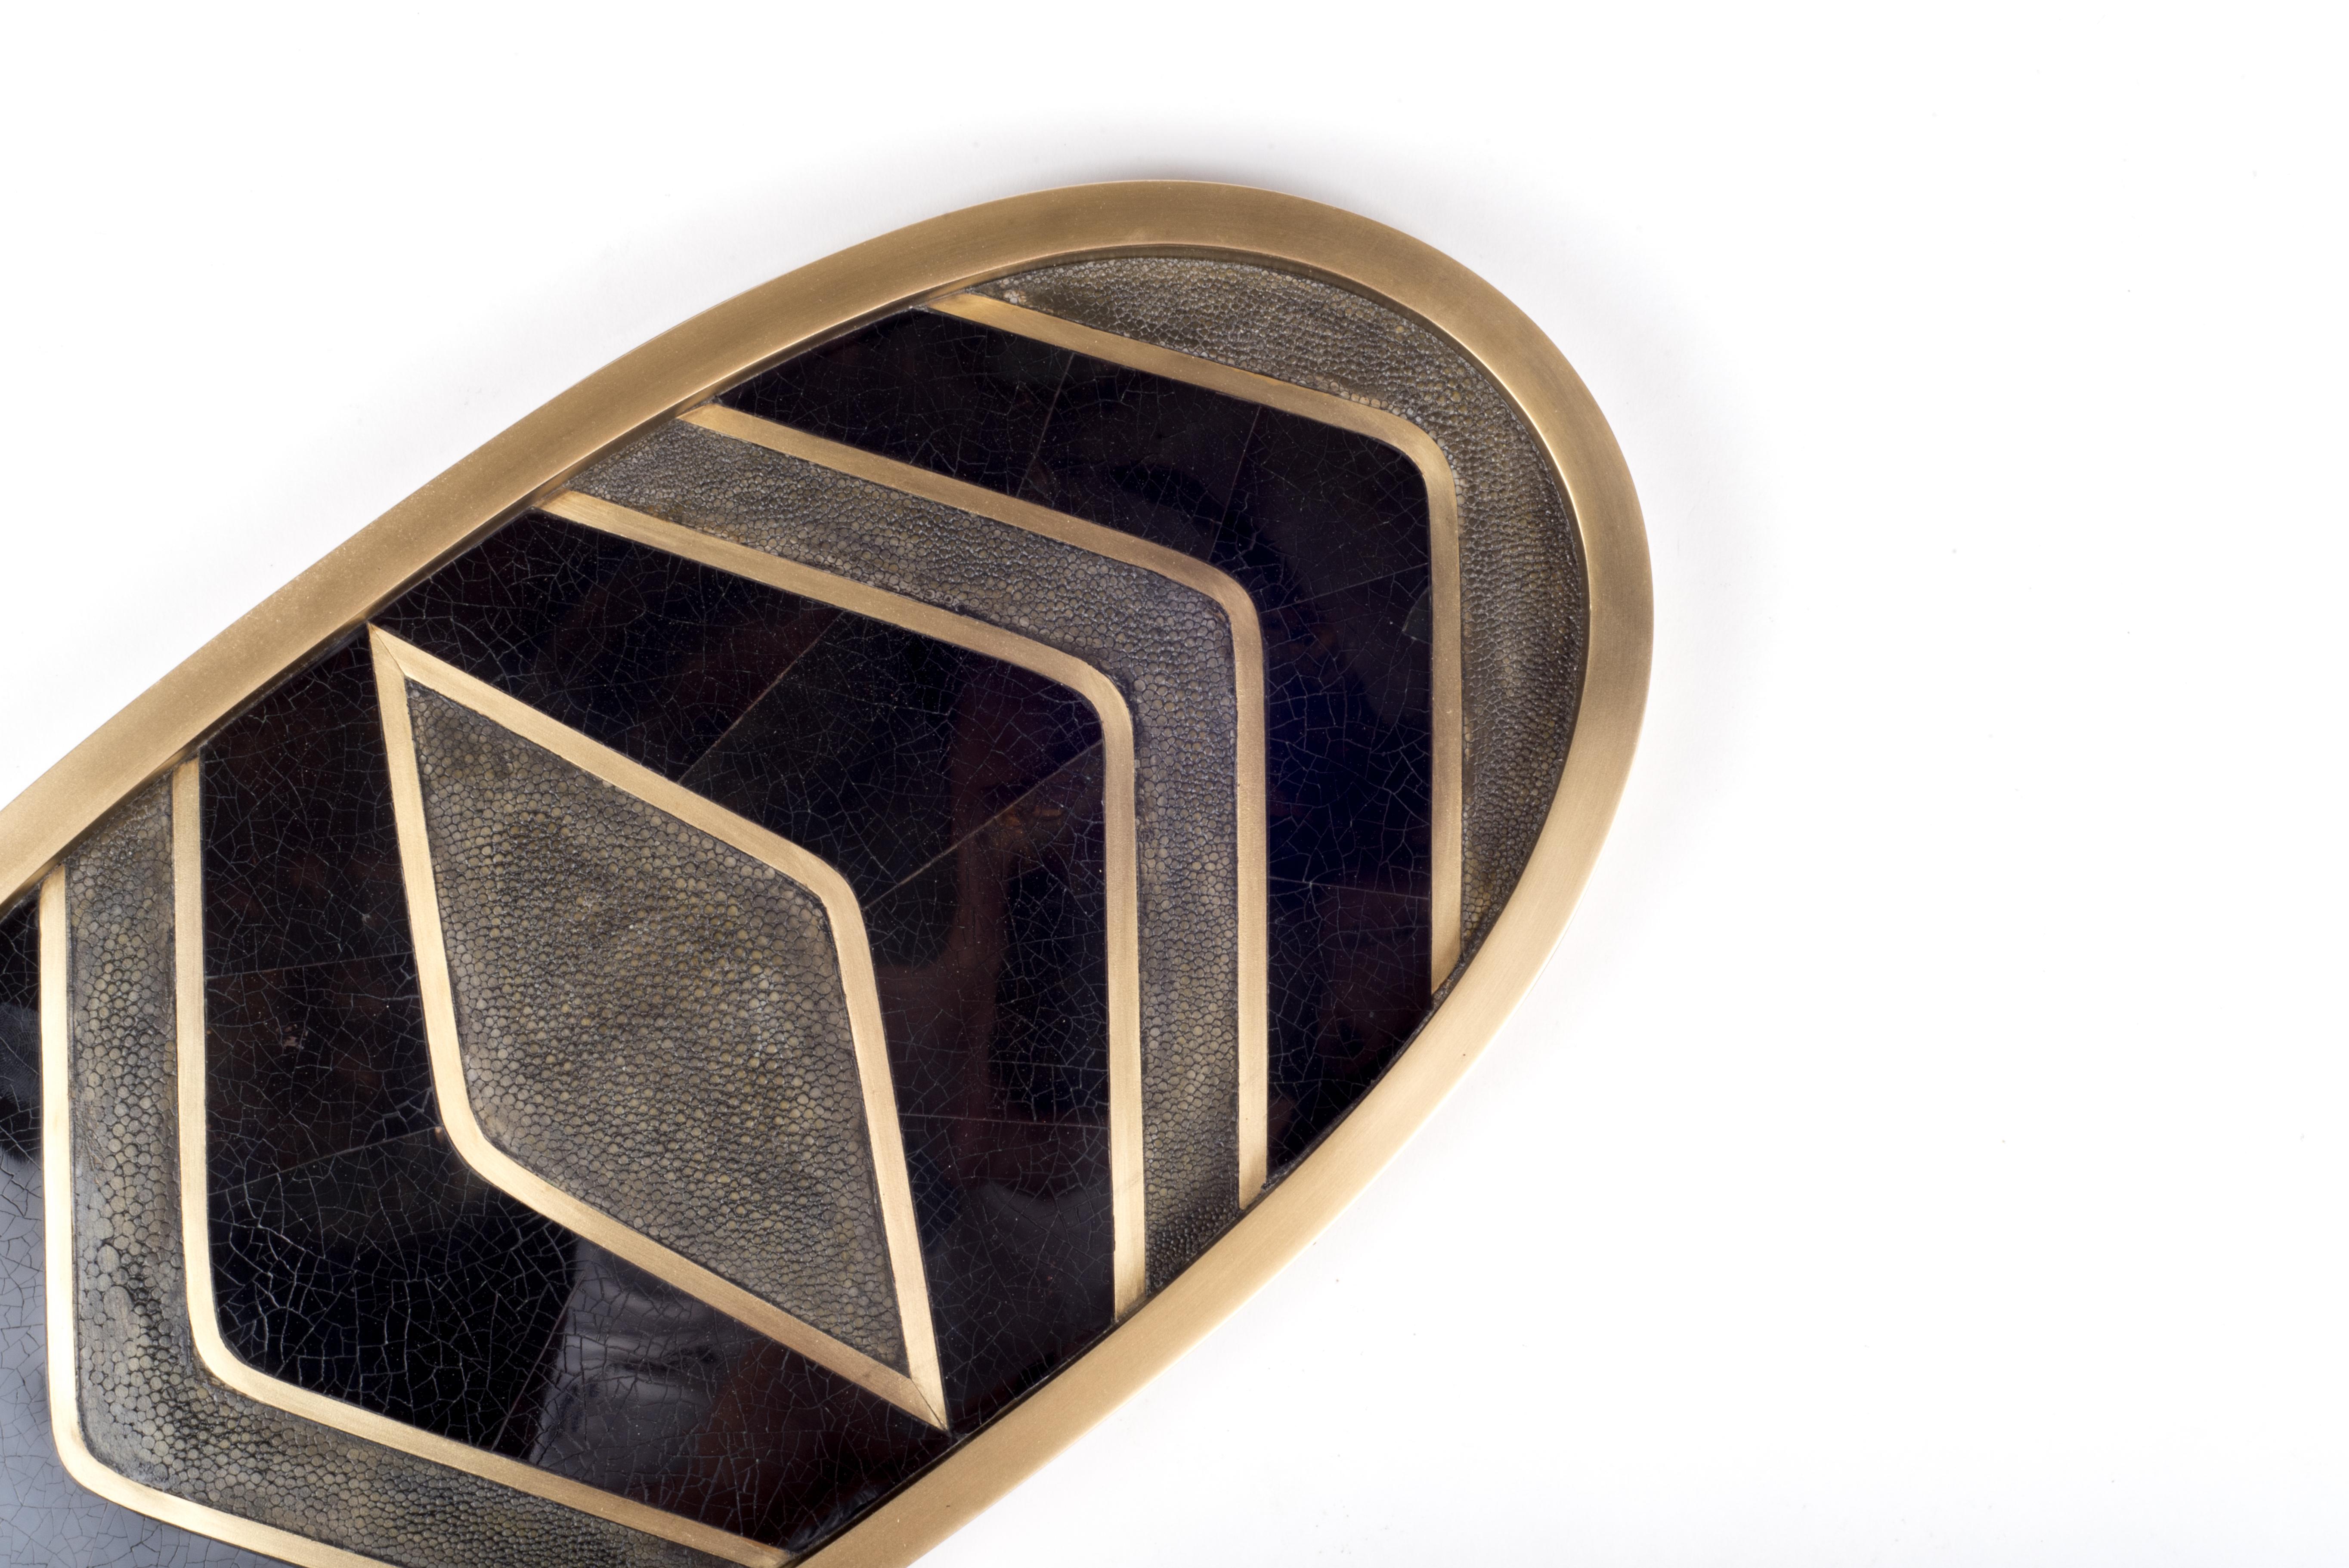 Dieses klassische ovale Tablett mit Zickzack-Muster von Kifu Paris ist mit einer Mischung aus schwarzem Chagrin, schwarzer Muschel und Messing in Bronze-Patina eingelegt und macht sich in jedem Raum gut auf dem Tisch. Der Rahmen ist in